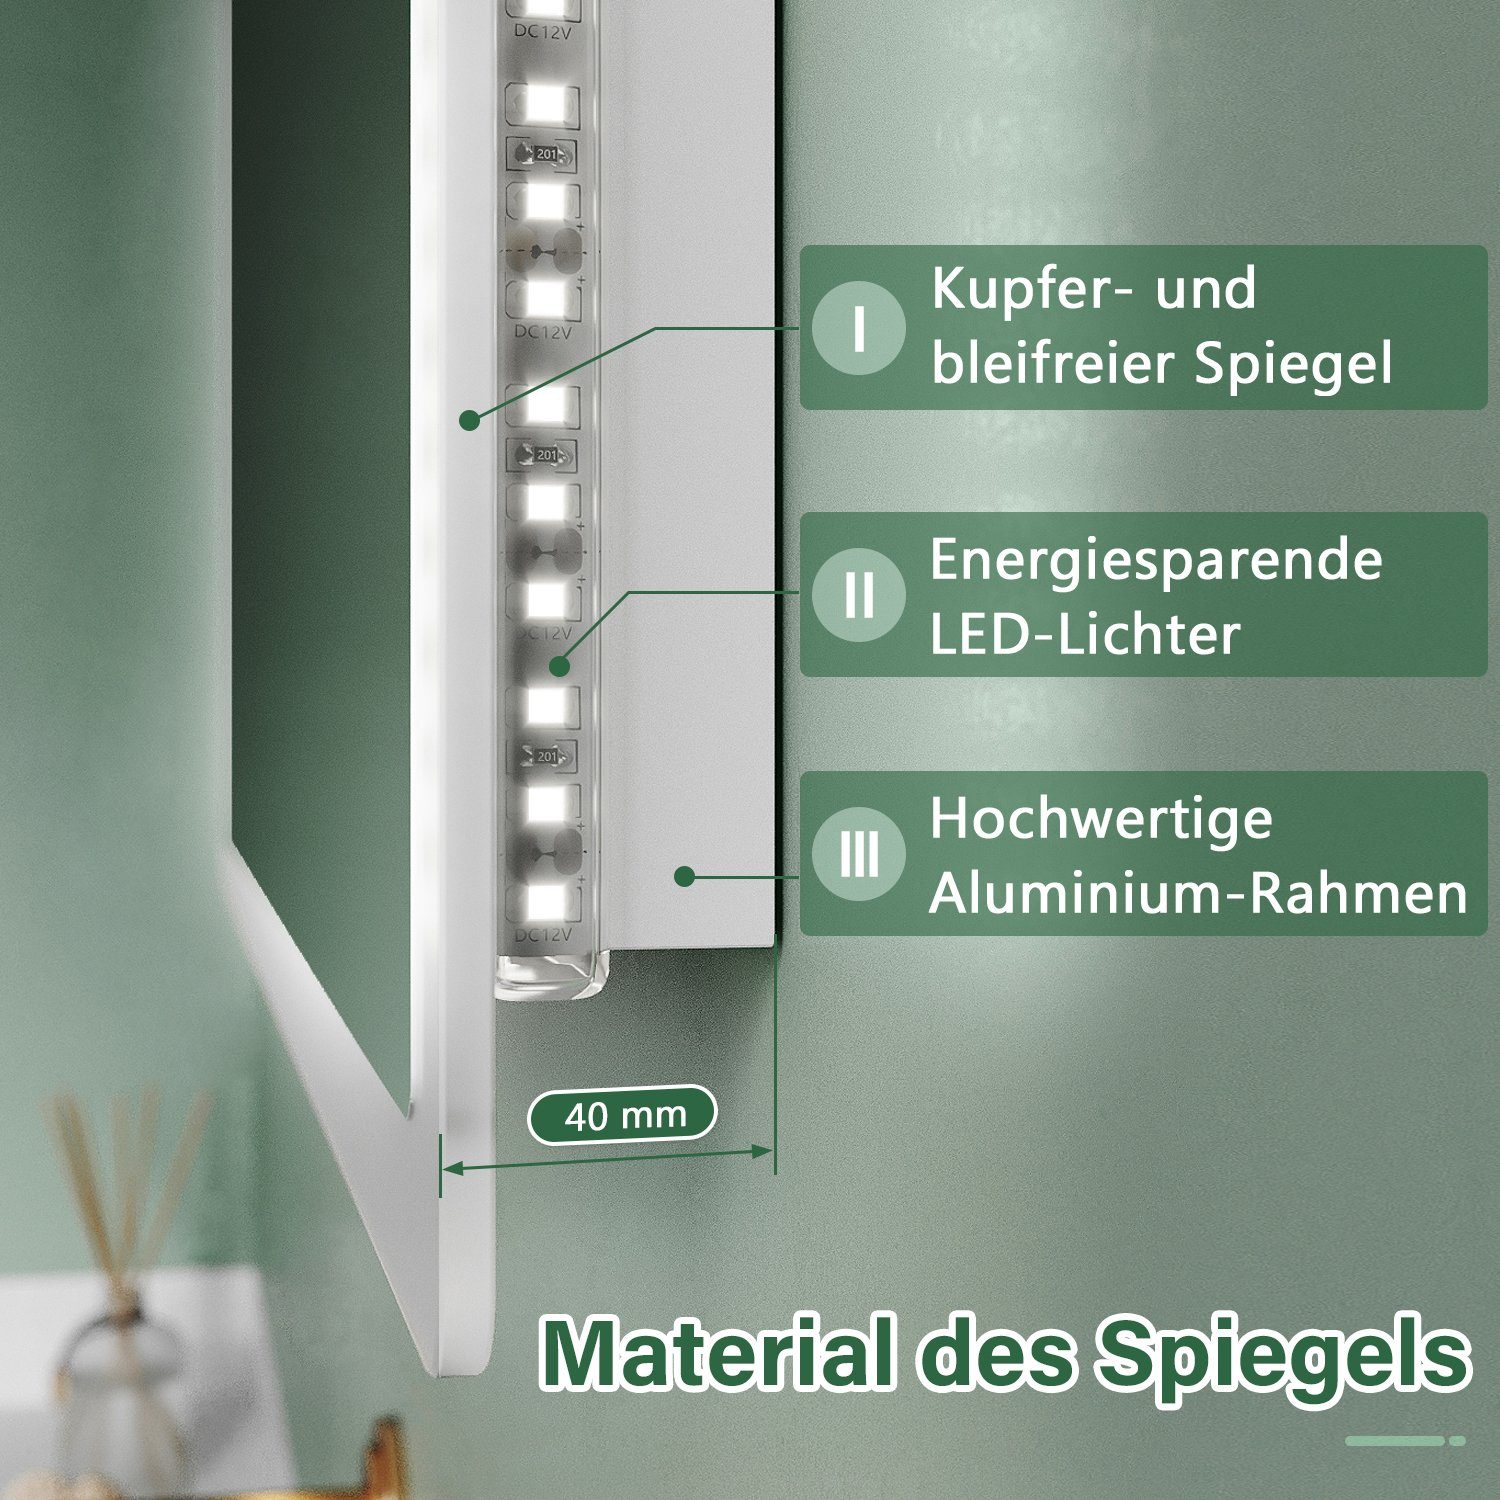 SONNI Badspiegel, mit Badspiegel Badezimmerspiegel, Lichtspiegel Wandschalter, 60×40 IP44 cm, Badspiegel, Beleuchtung, LED